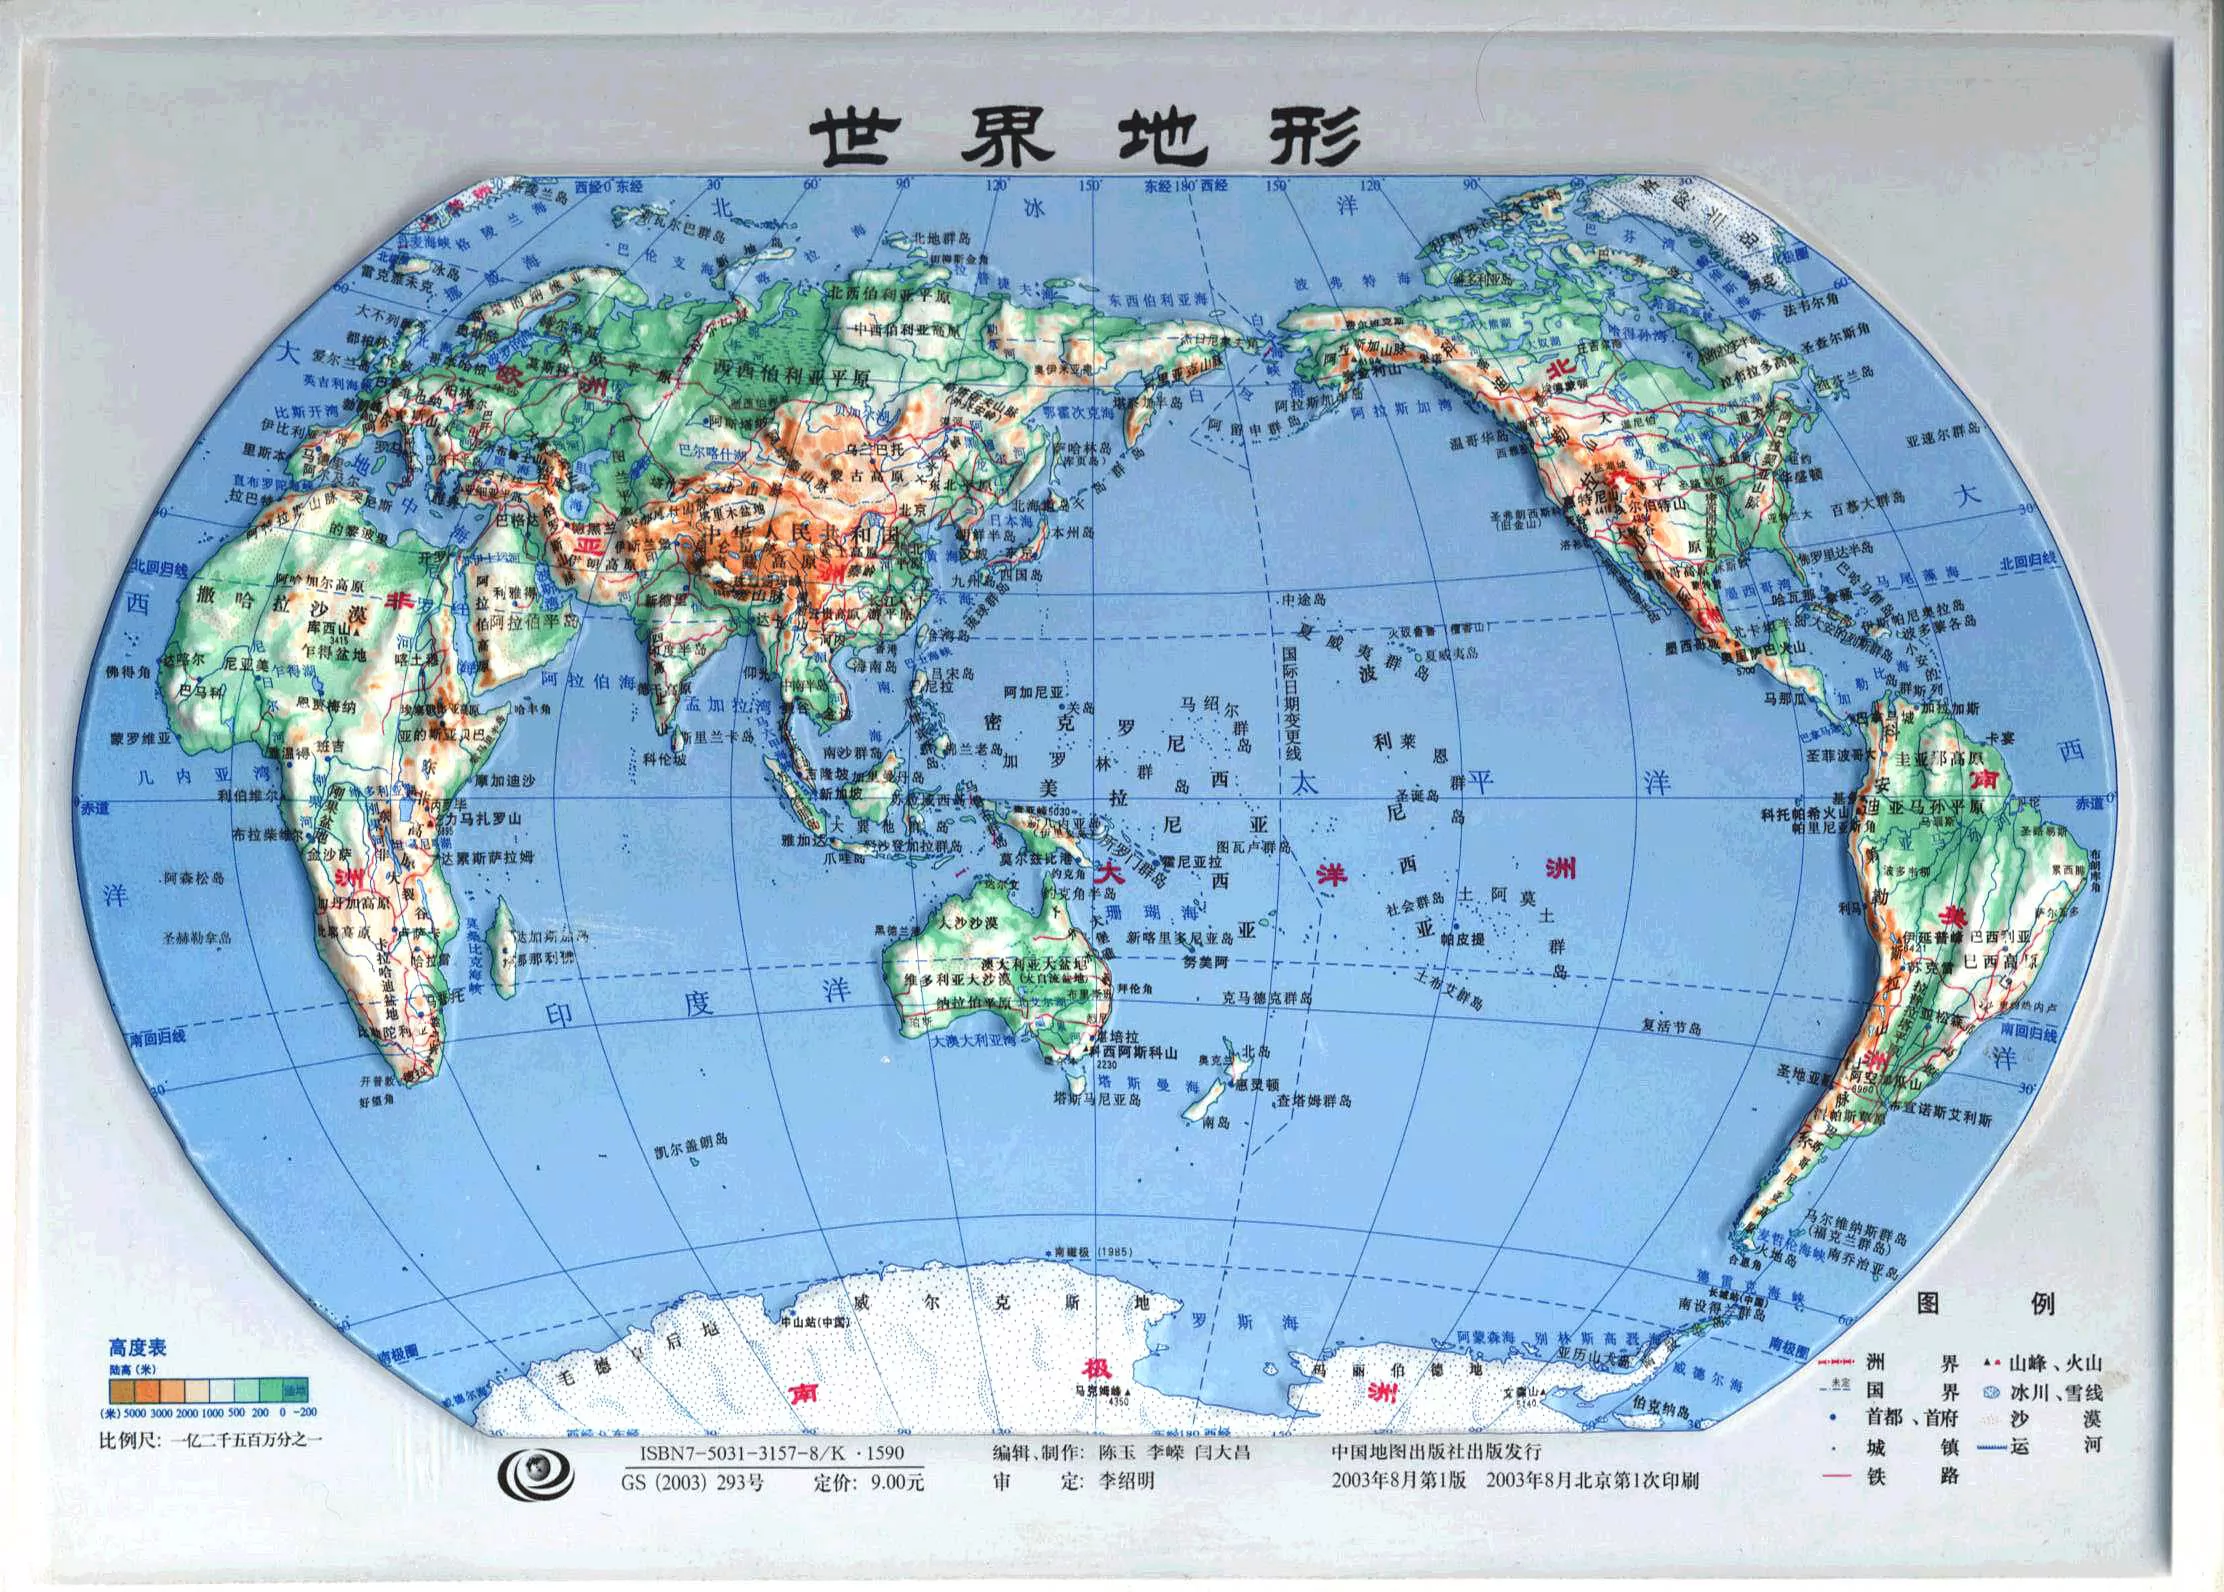 世界地形图